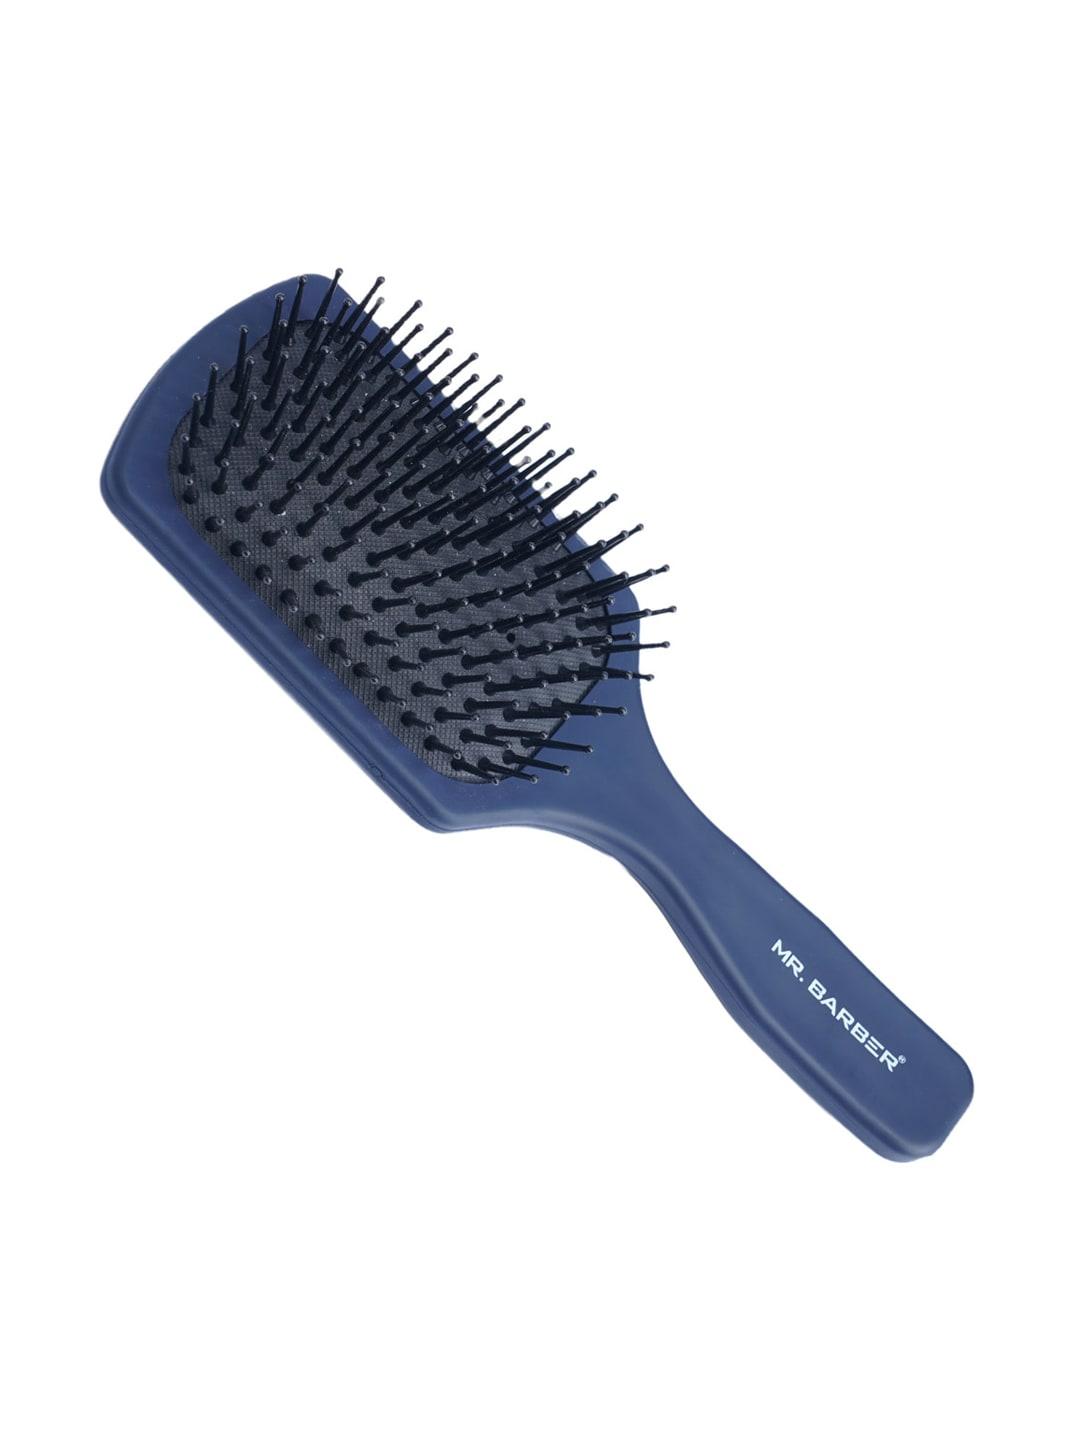 mr barber flat mate blue paddle brush (large)